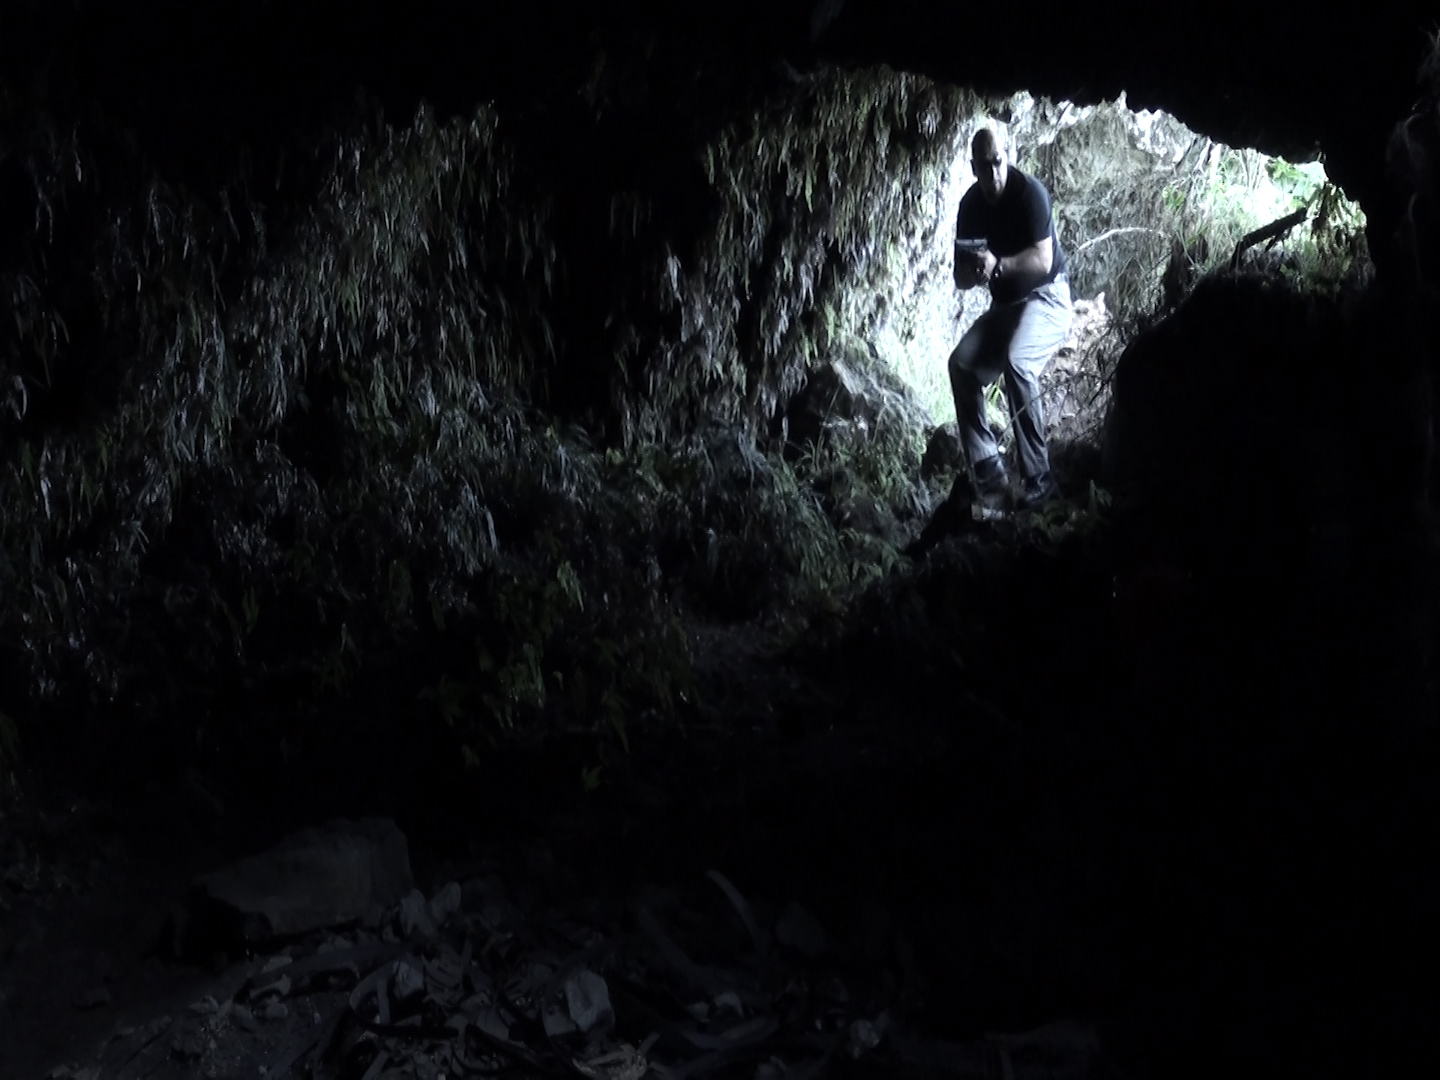 Bullitt (Richard Gonzalez) enters the cave chasing after Dr. Florez